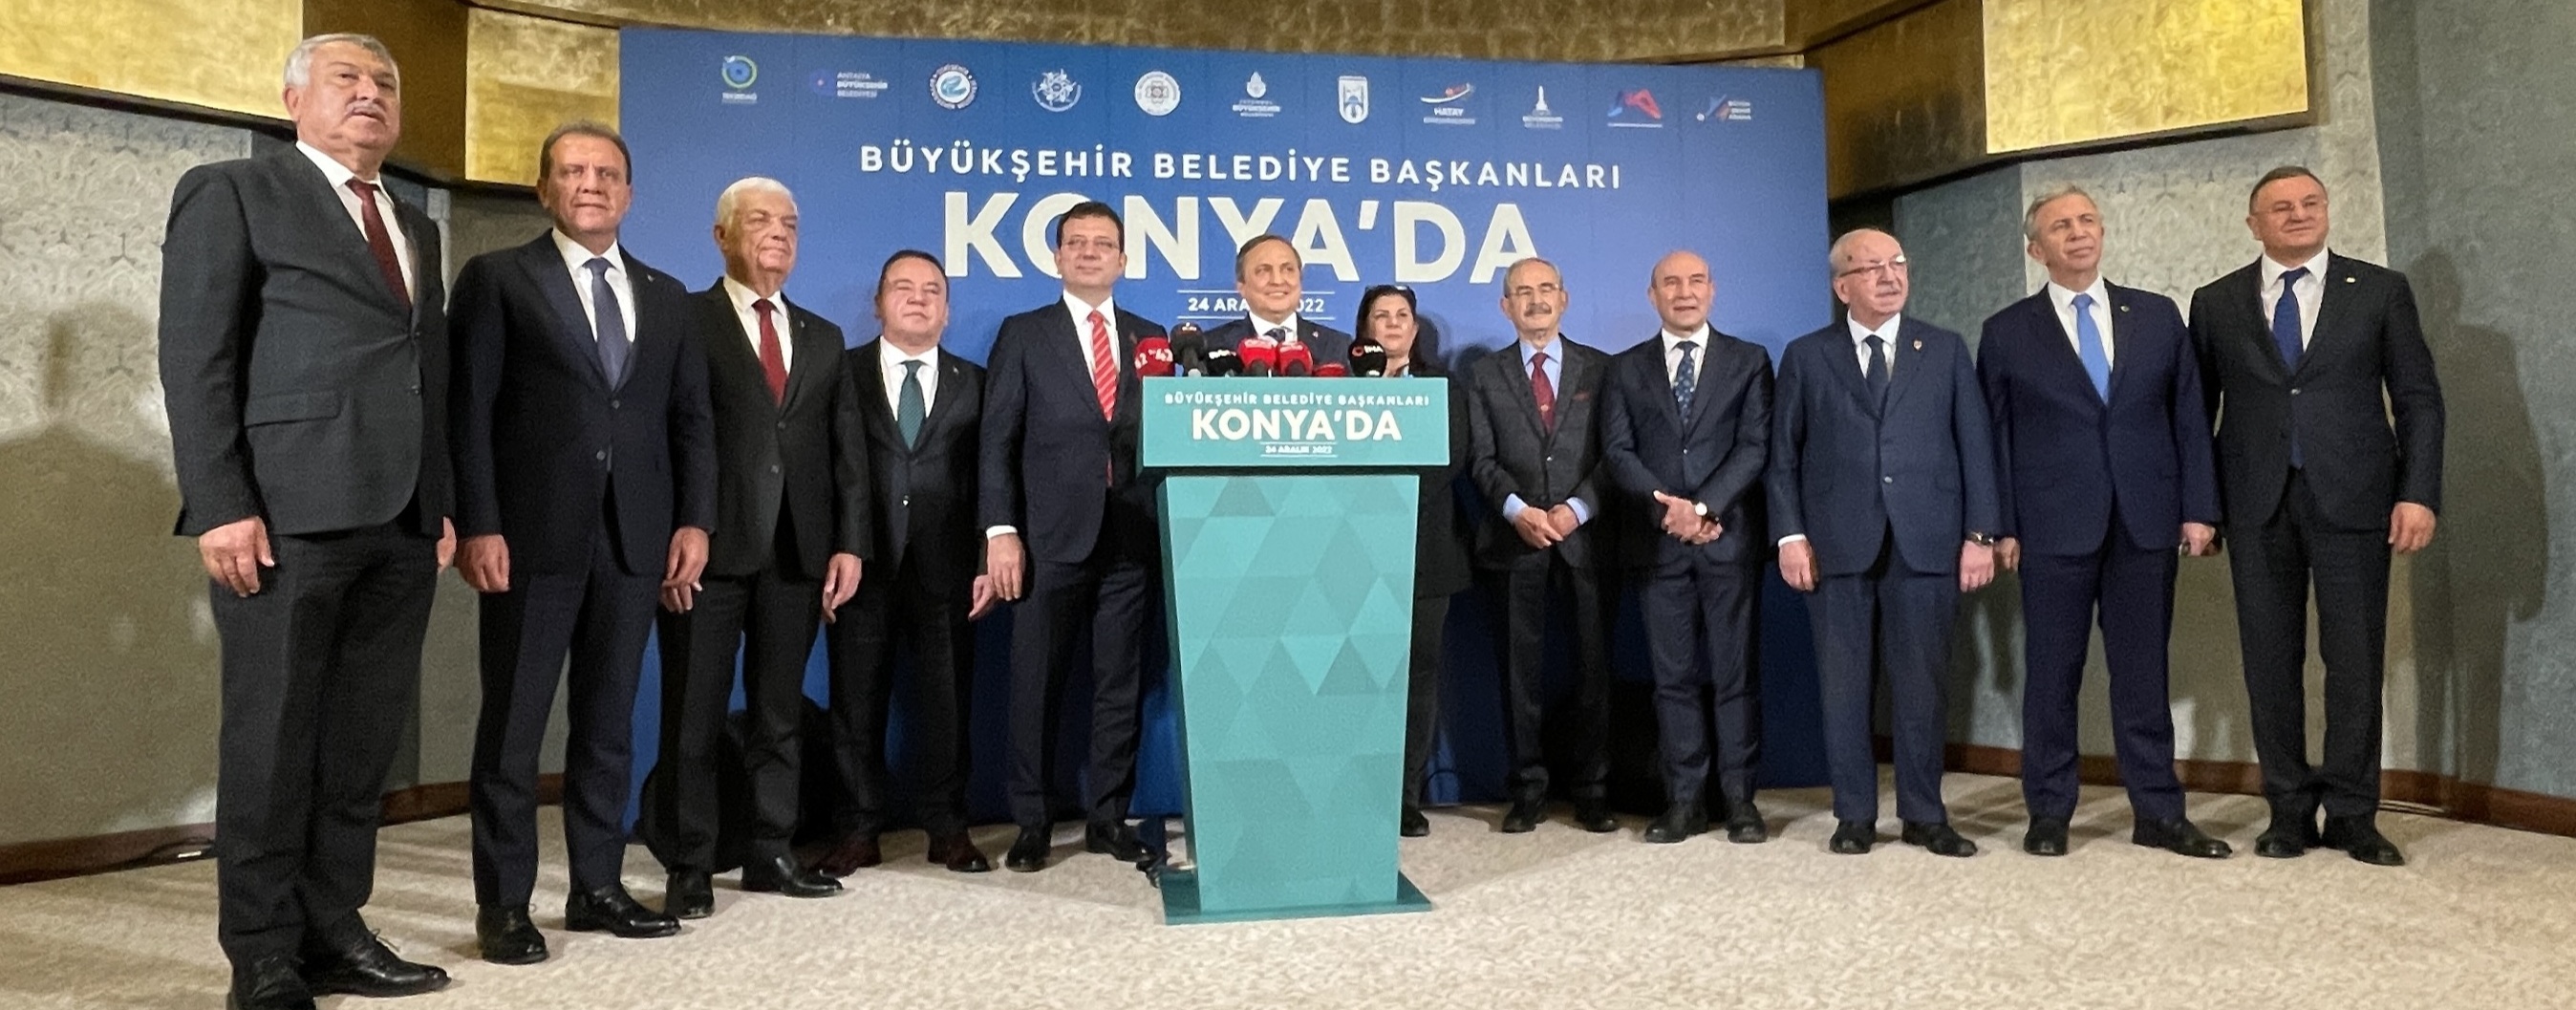 CHP'li büyükşehir belediye başkanlarının Konya programı sona erdi